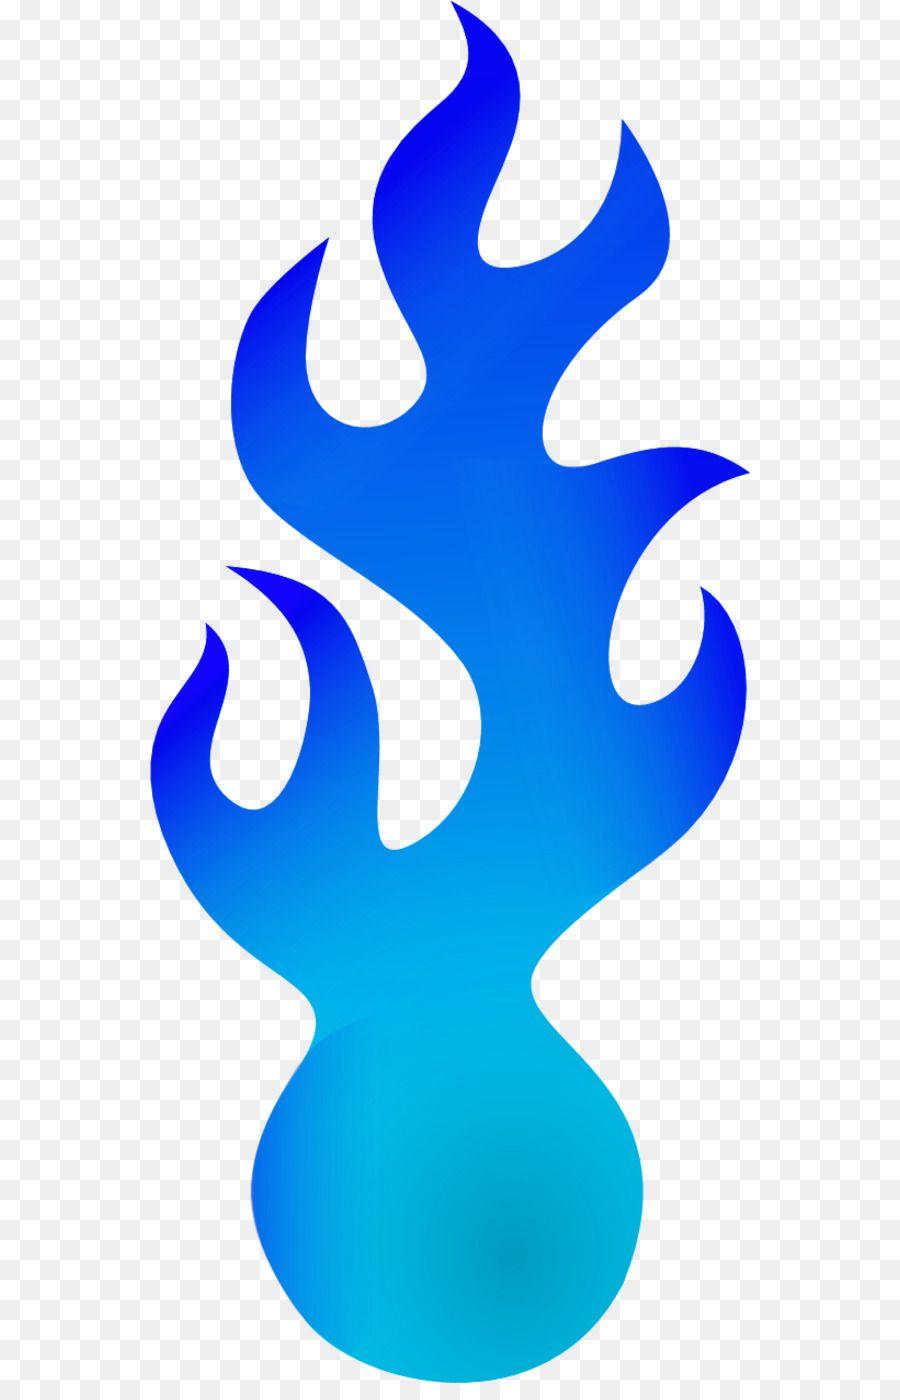 Blue Fireball Logo - Drawing Blue Clip art - fireball png download - 600*1383 - Free ...